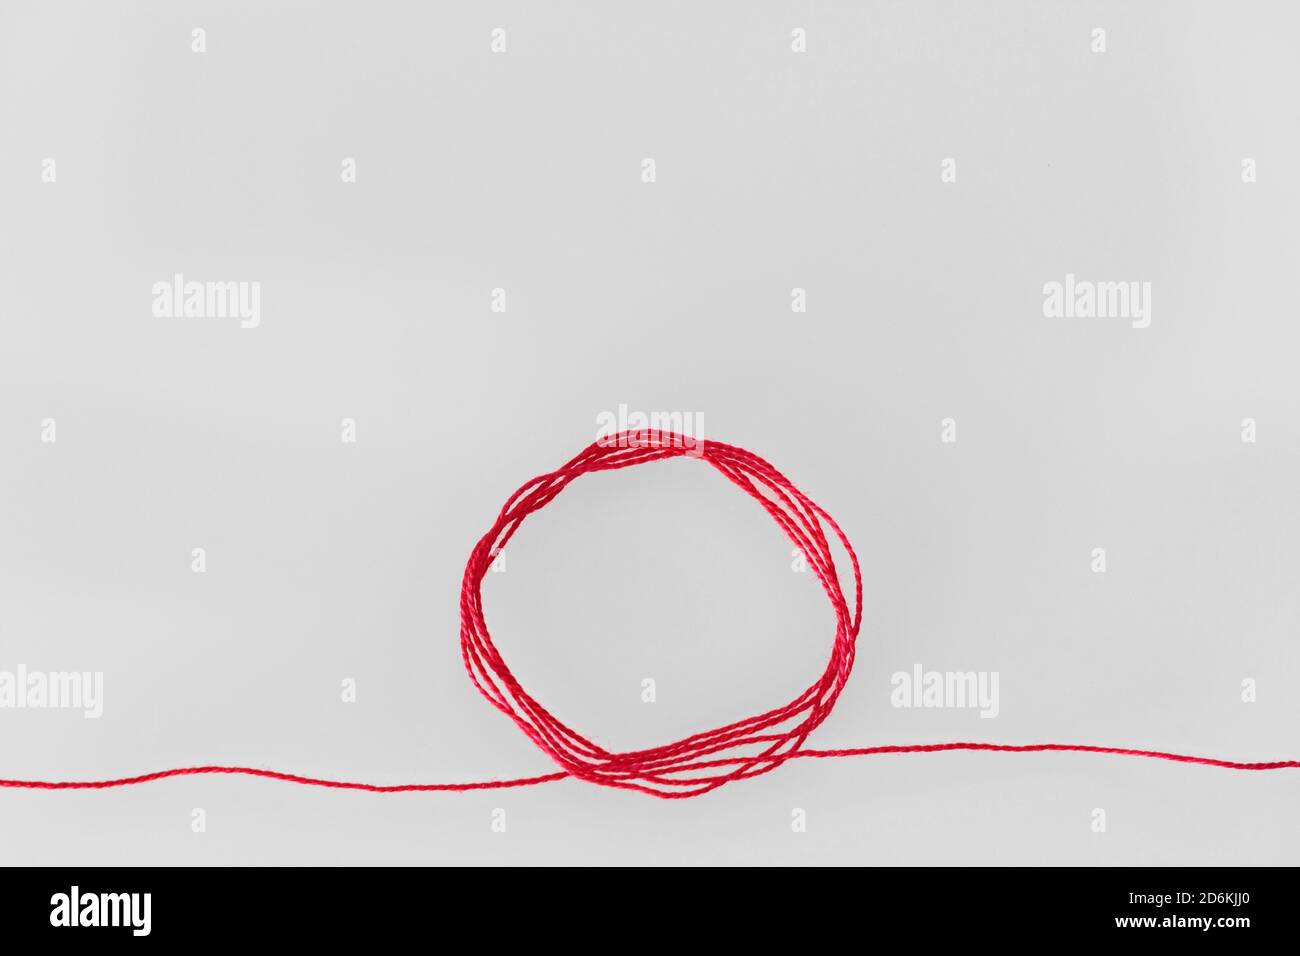 Ein roter Seidenfaden, kreisförmig geloopt, der sich an beiden Enden erstreckt und den roten Faden des Schicksals in der chinesischen Tradition symbolisiert, auf einem weichen weißen Hintergrund Stockfoto